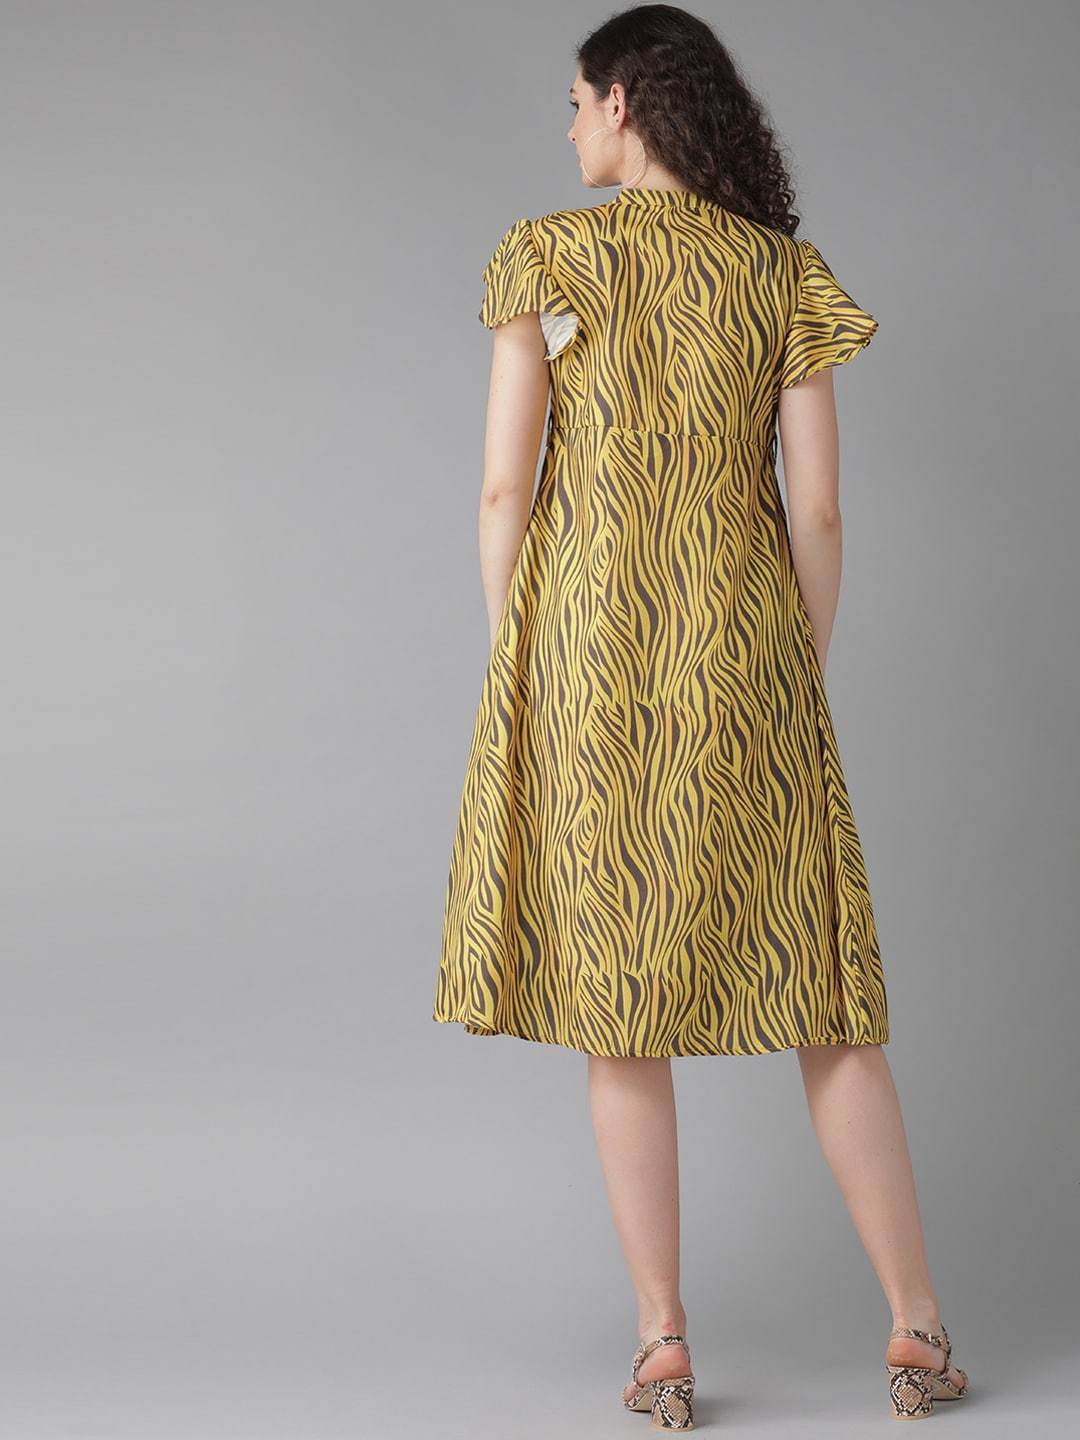 Women's  Yellow Printed A-Line Dress - AKS